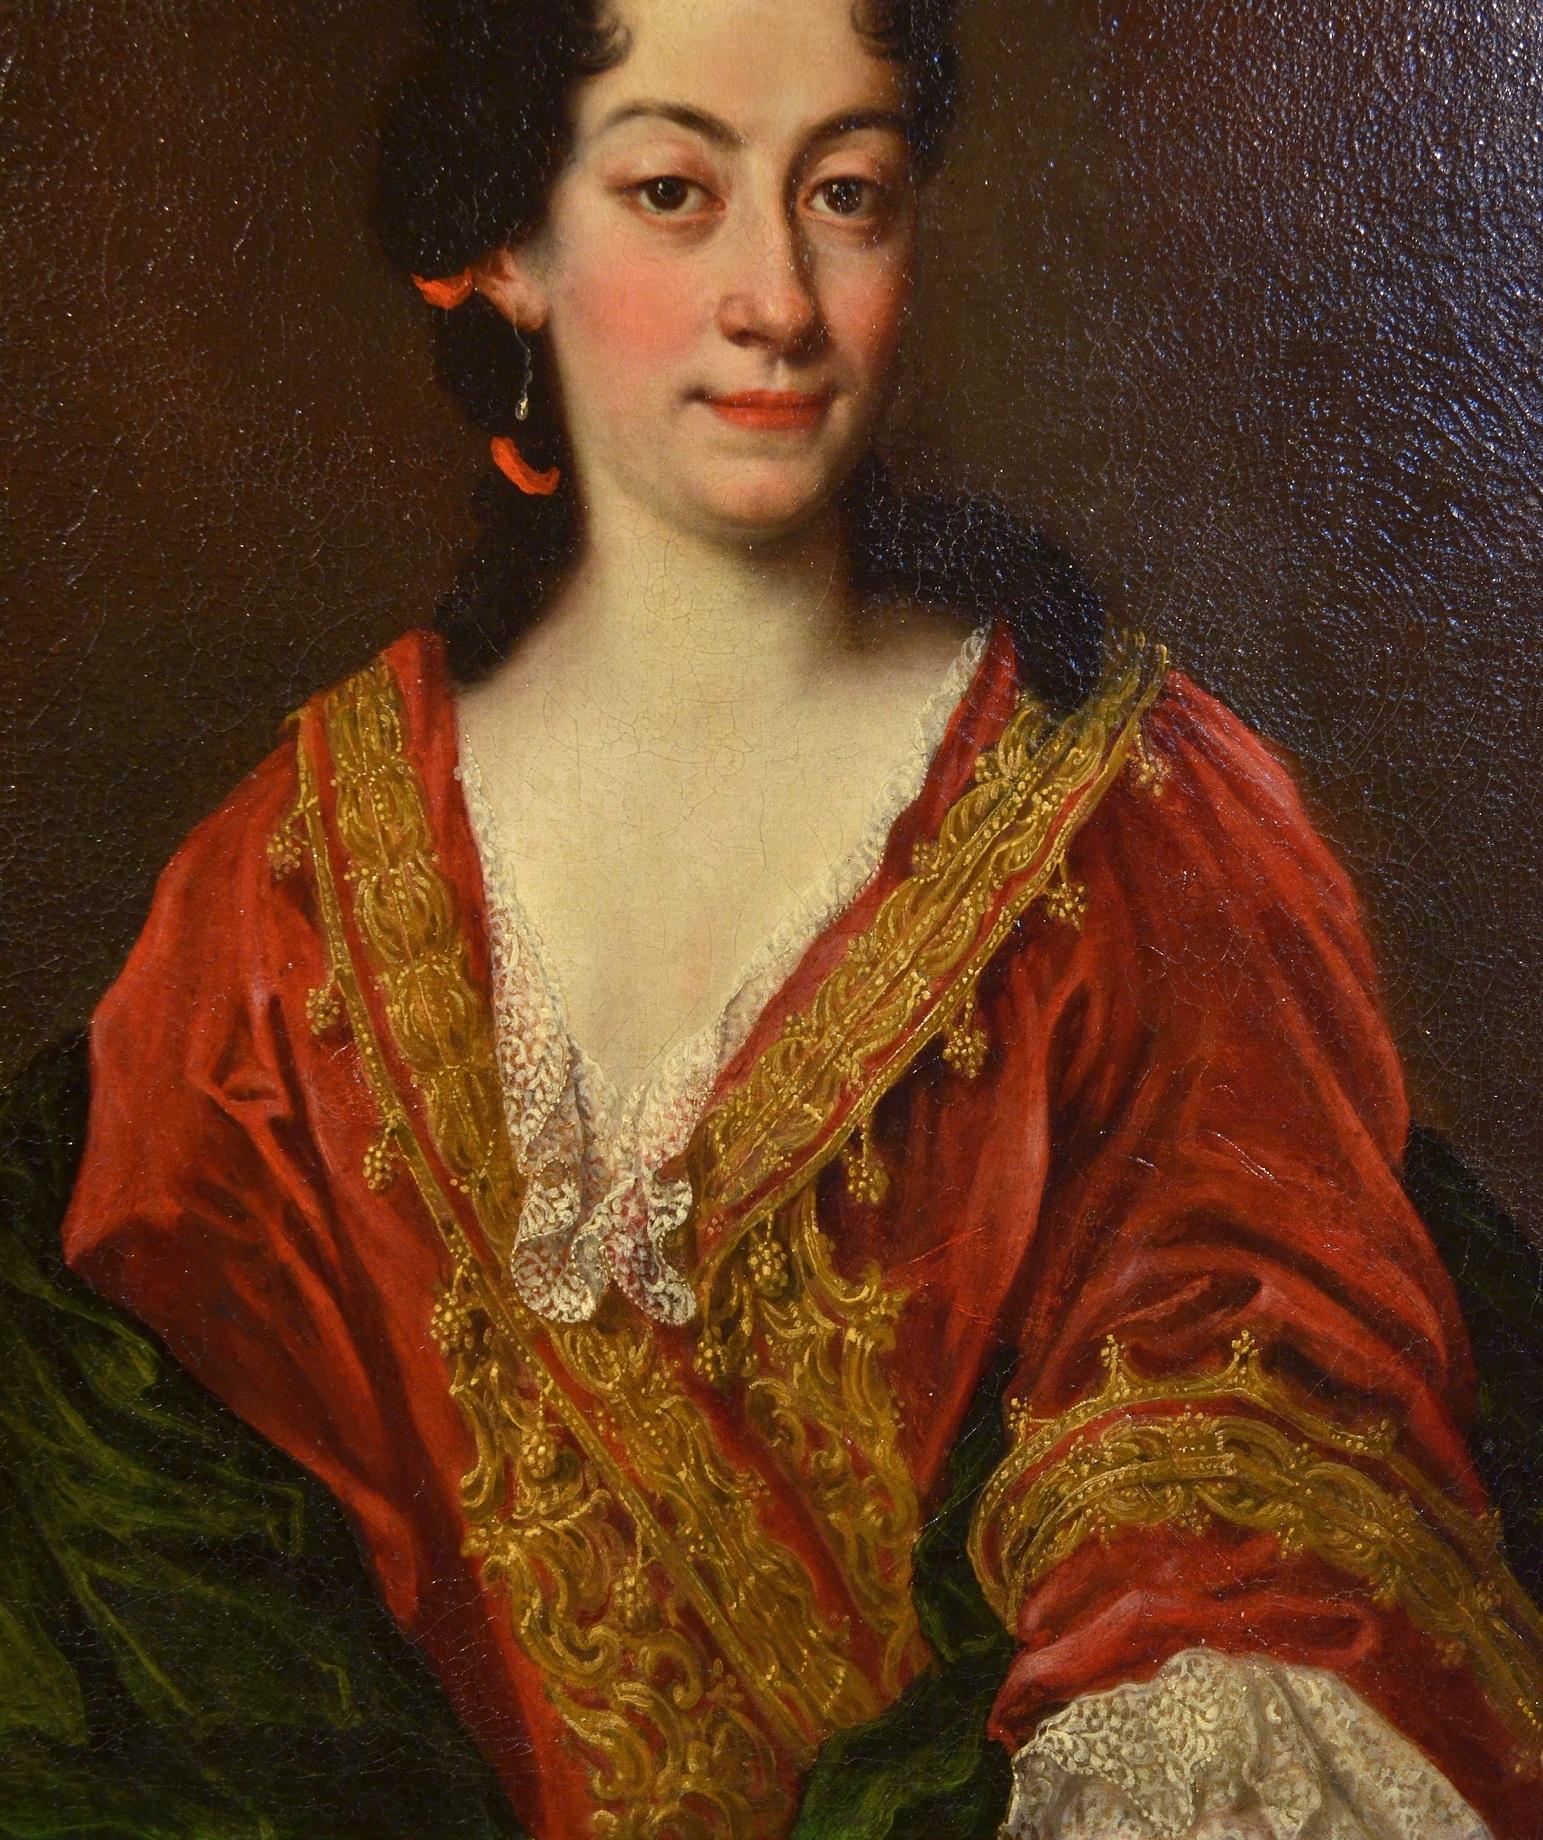 Le beau portrait proposé, qui représente une femme génoise d'origine sociale élevée et habillée de manière somptueuse et élégante, illustre les caractéristiques stylistiques typiques du grand portraitiste génois Giovanni Maria Delle Ciane, appelé le